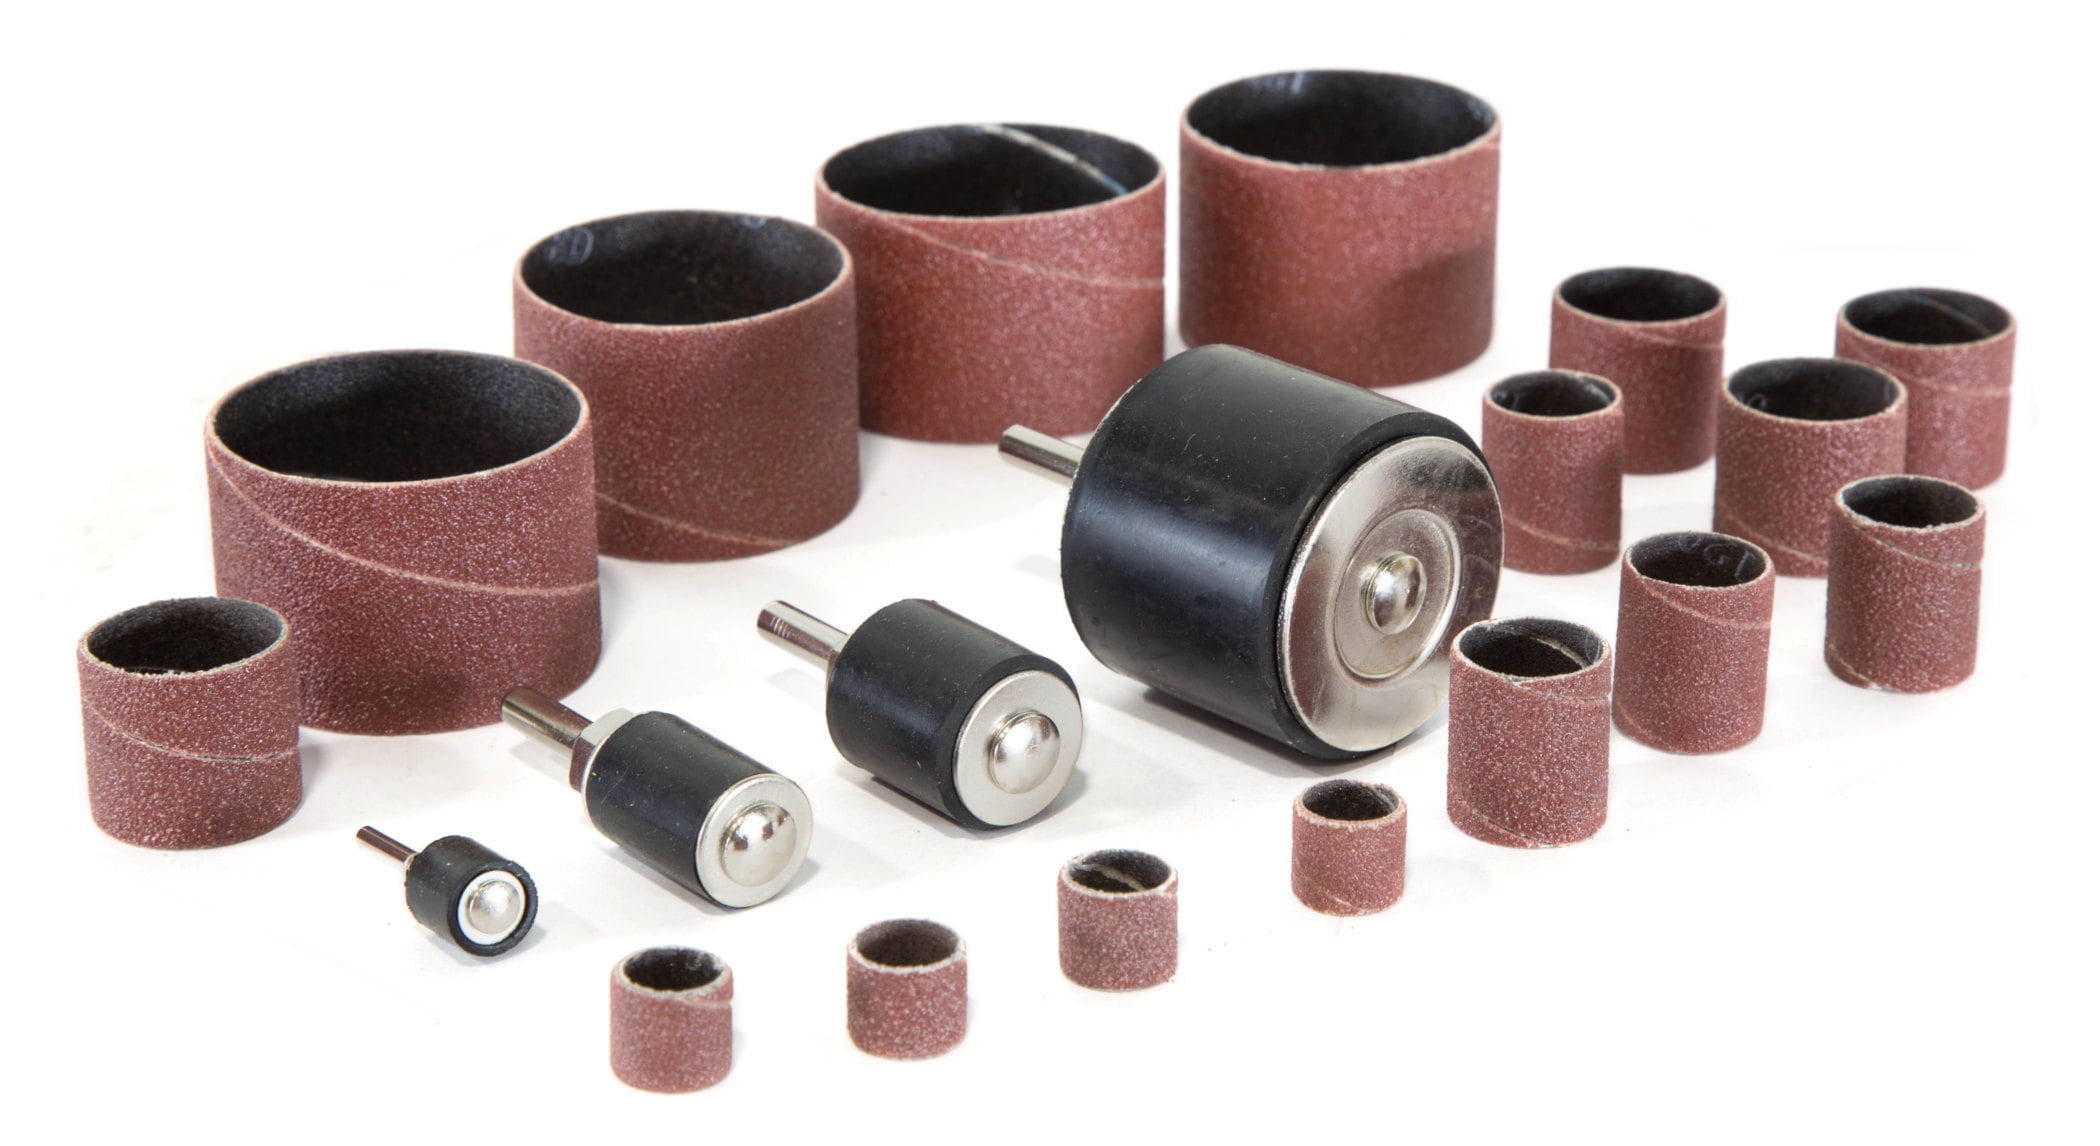 Accessories Abrasive Tools Drum Sanding Kit Nail Drills Bit Drill attachment 